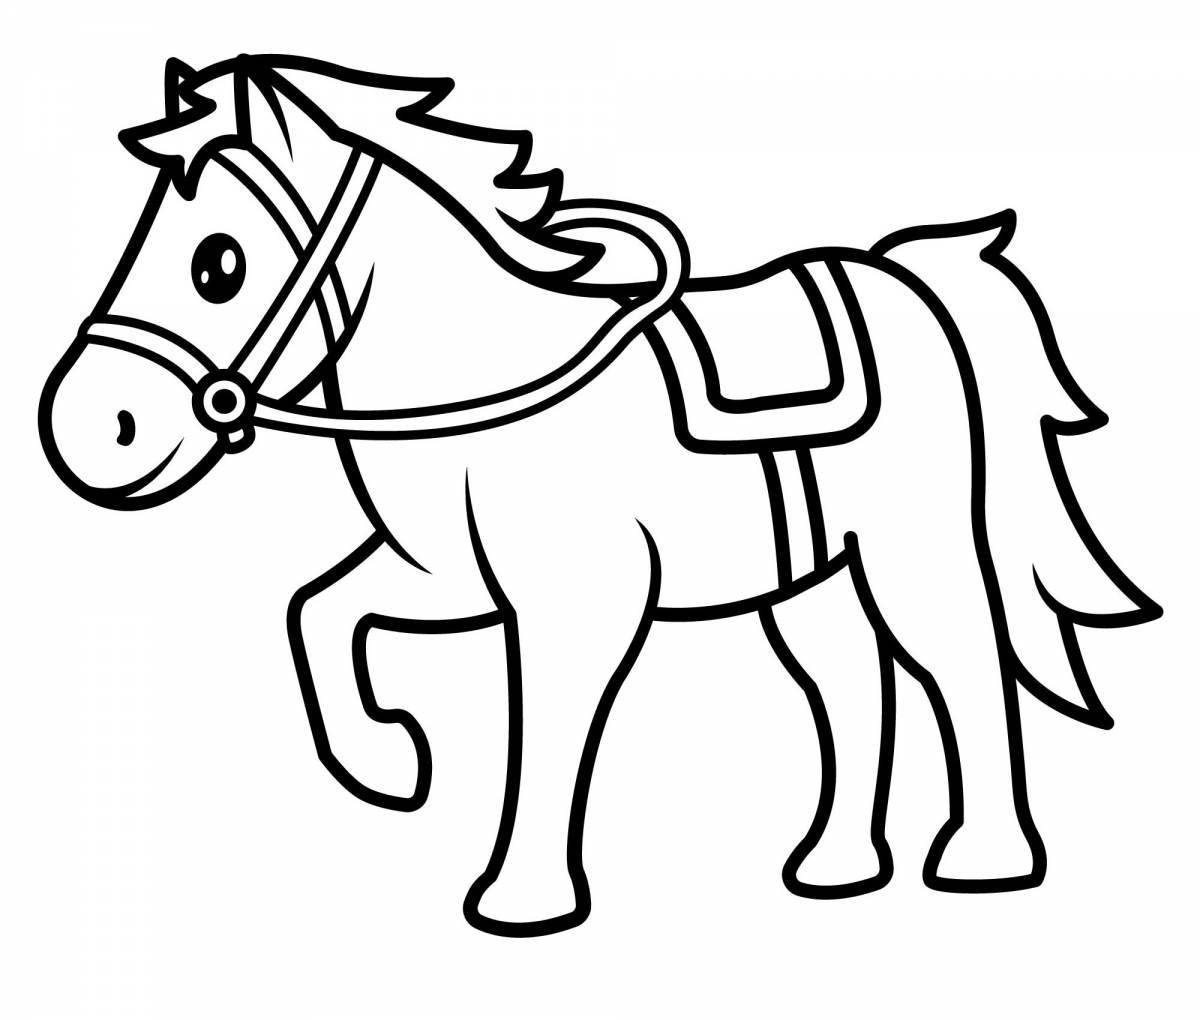 Лучистая раскраска лошадка для детей 5-6 лет